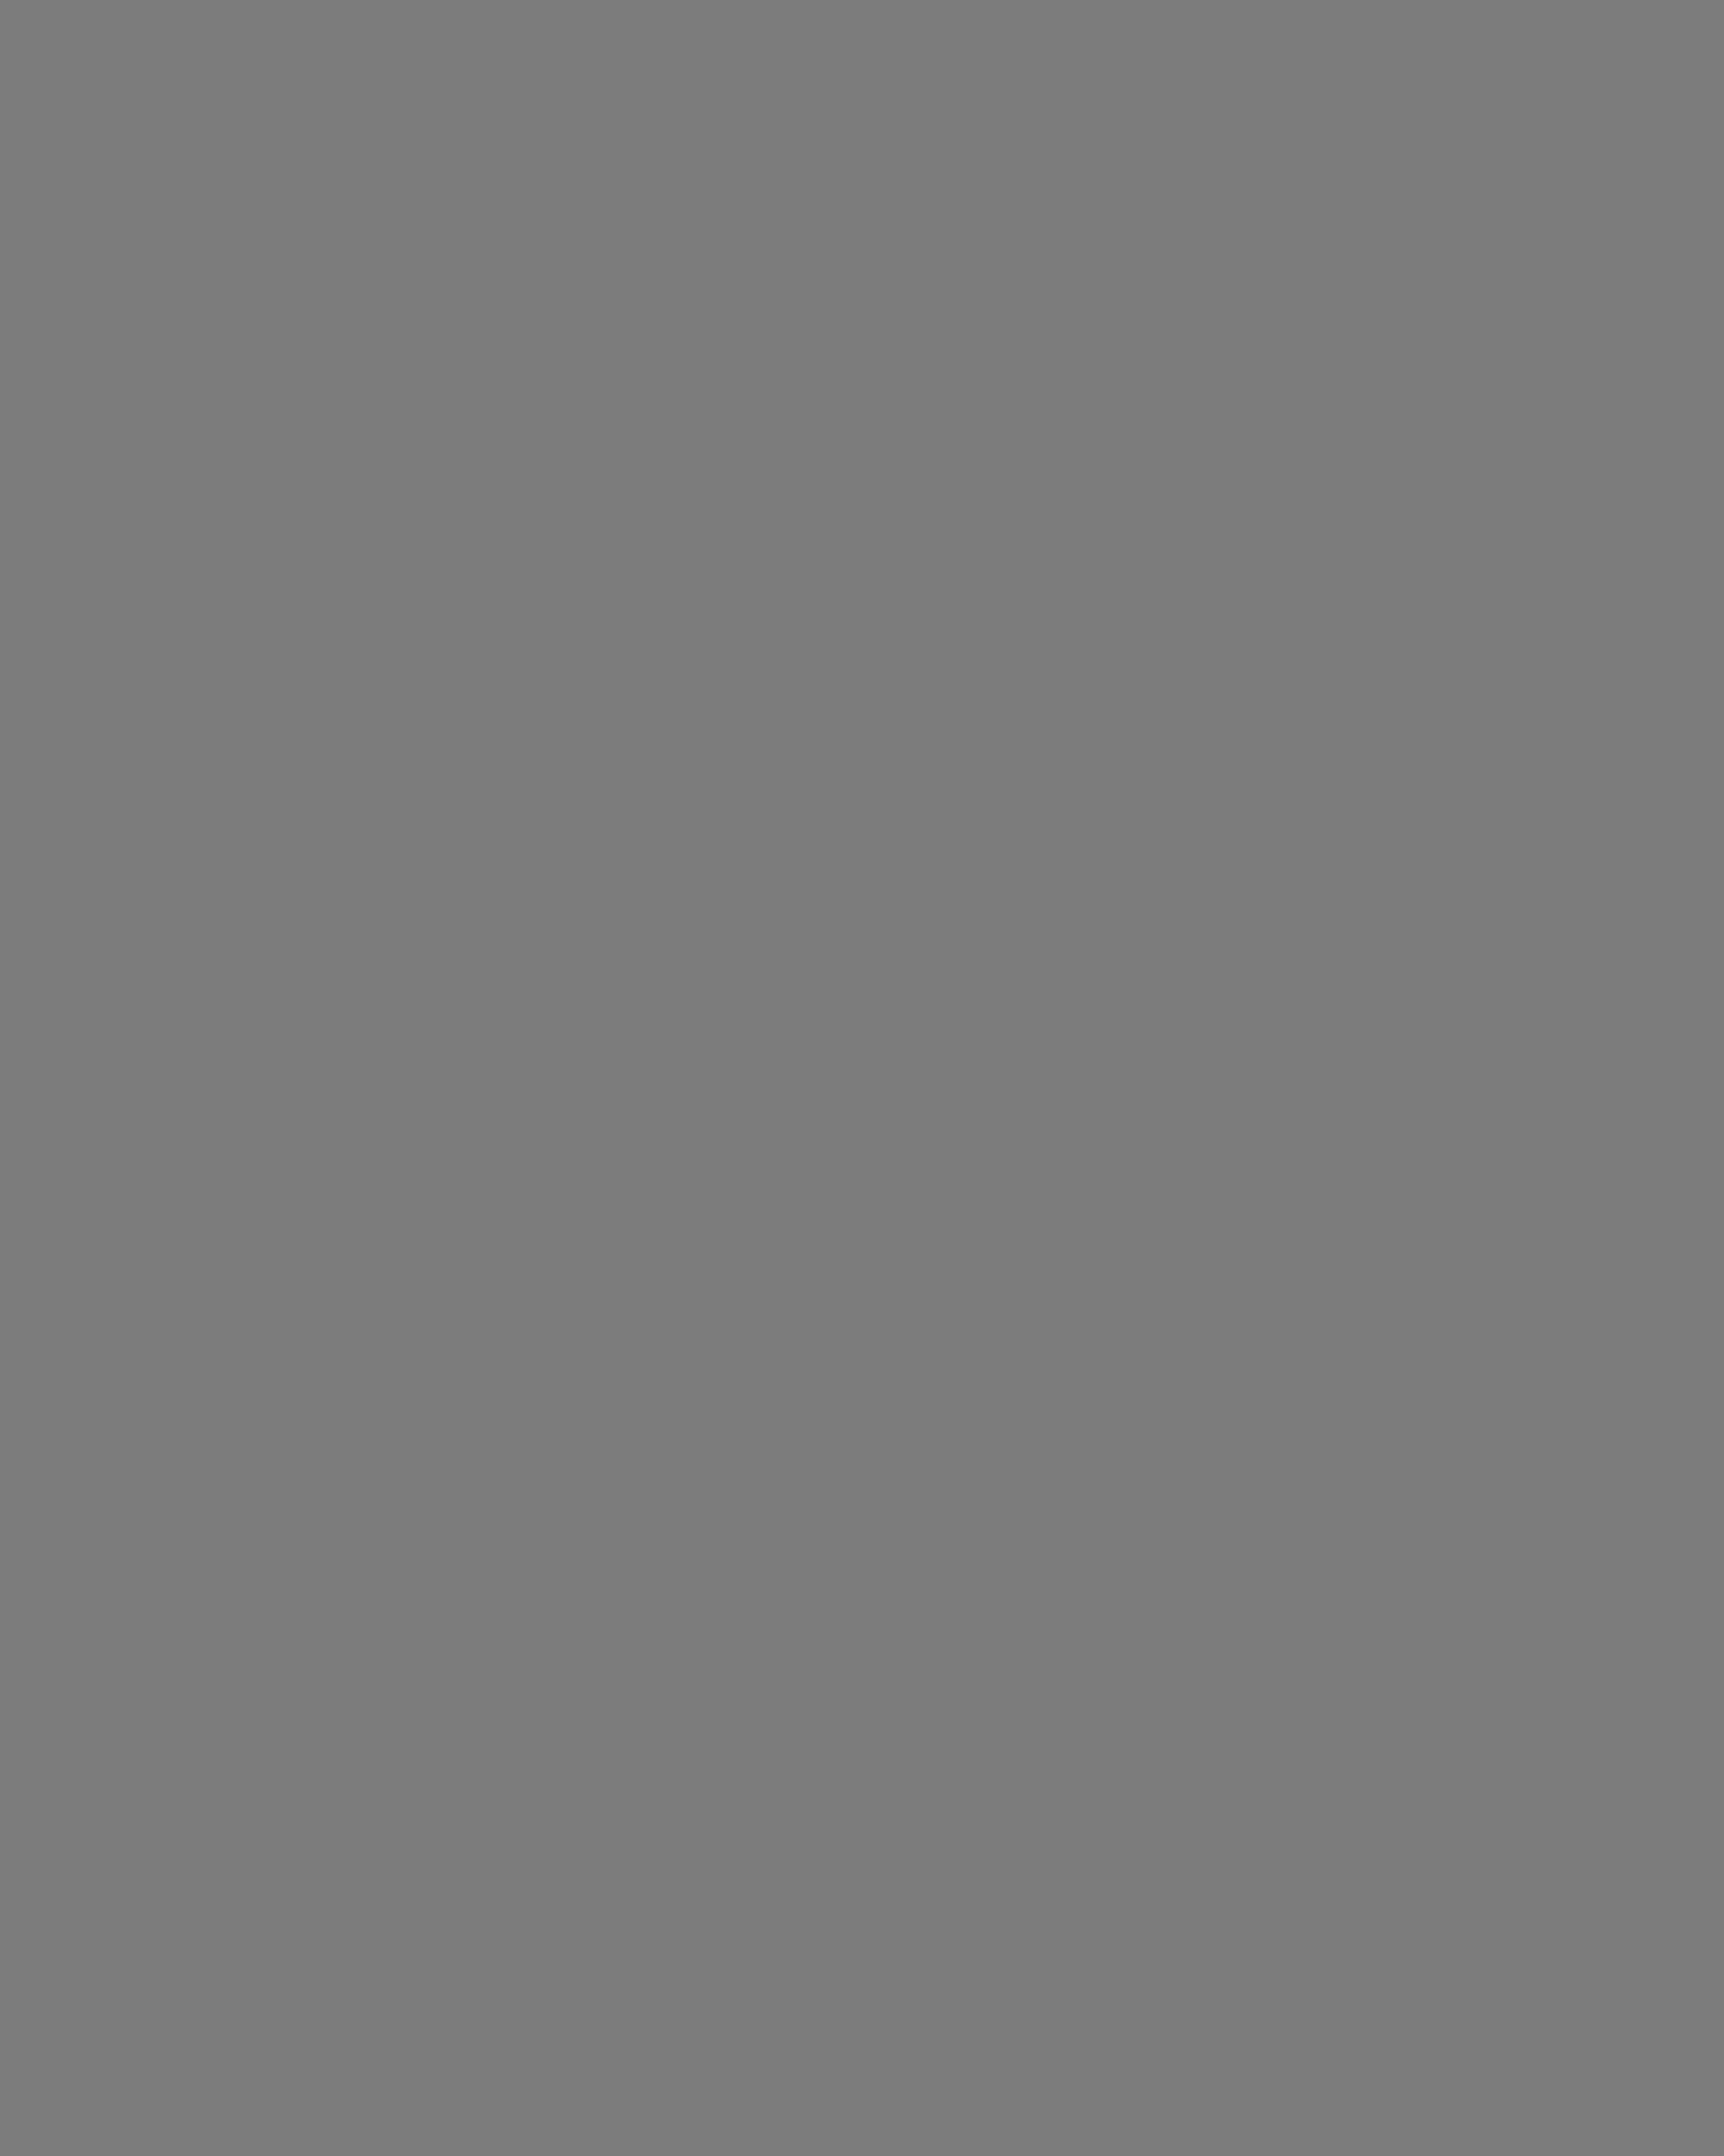 Муслим Магомаев. Баку, Азербайджанская ССР, 1964 год. Фотография: Евгений Кассин, Владимир Савостьянов / ТАСС